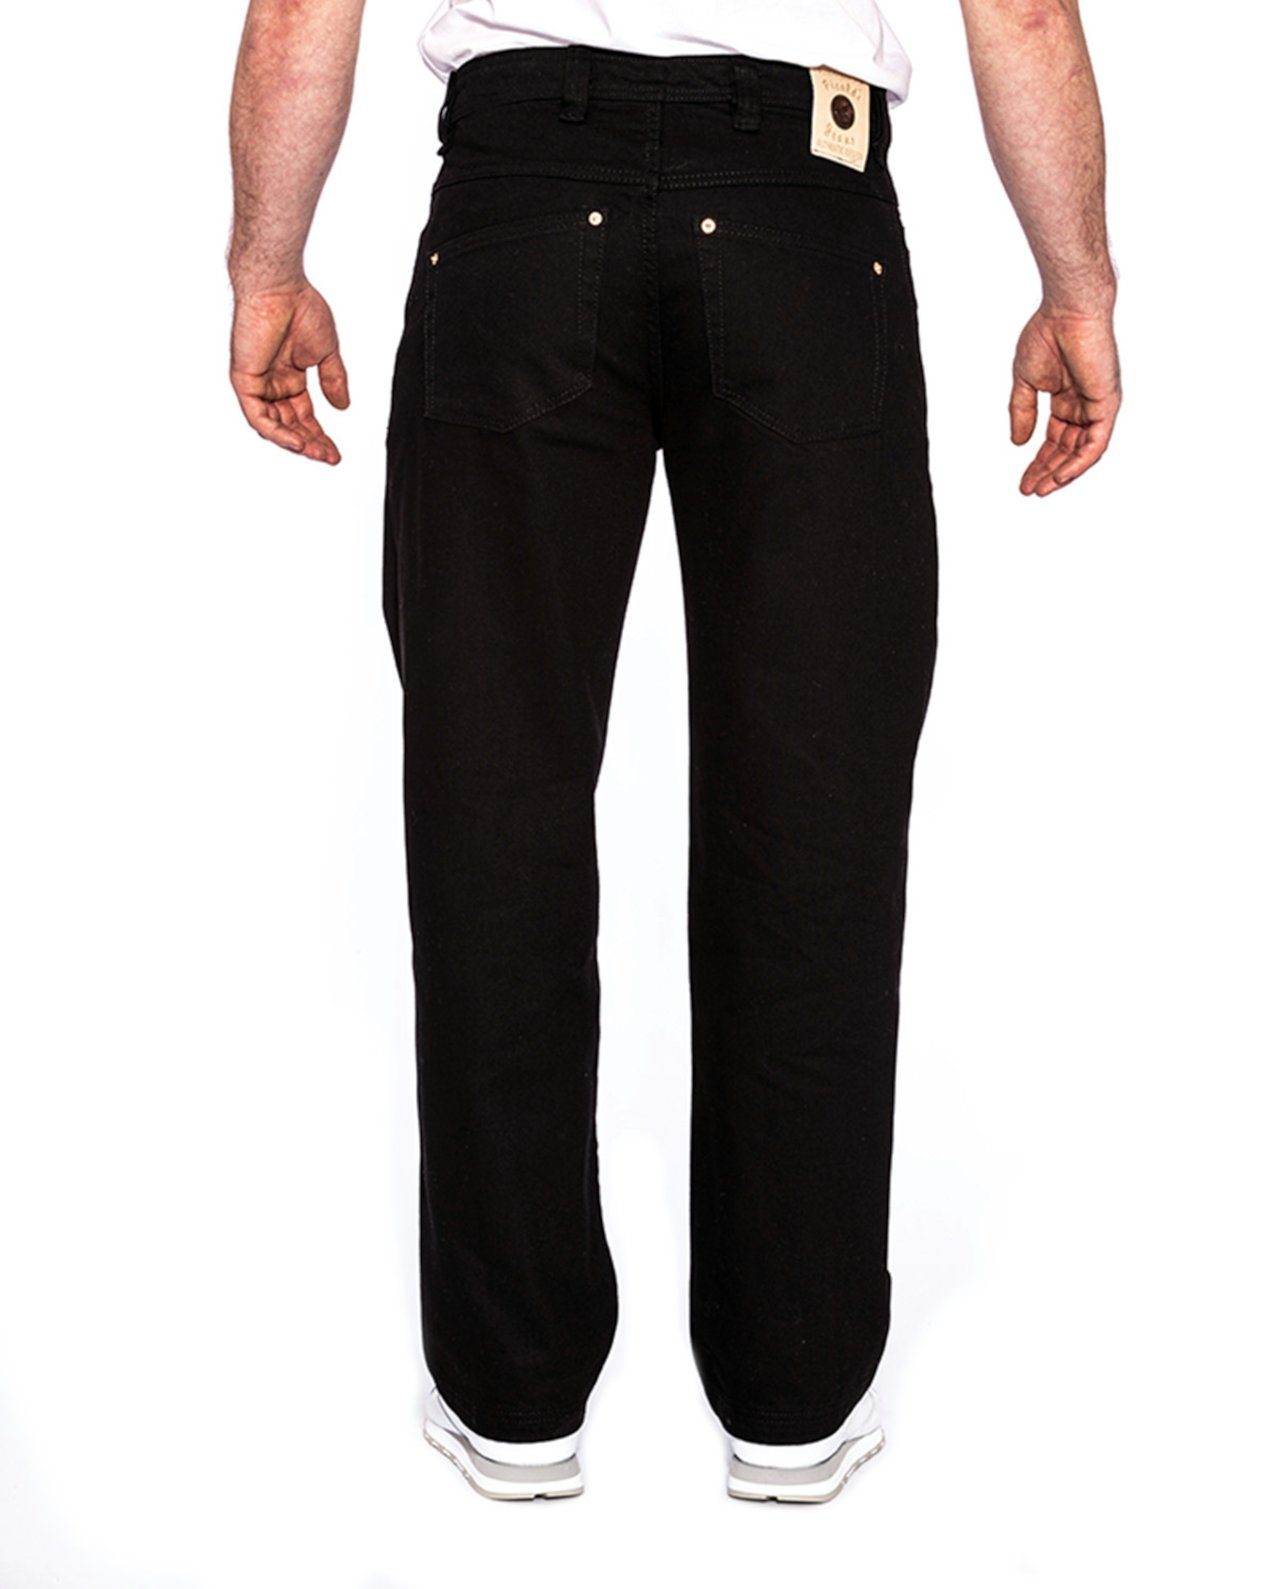 PICALDI Fit, Black Baggy Leg, Straight Schnitt lässiger 474 Jeans Gerader Jeans Zicco Weite